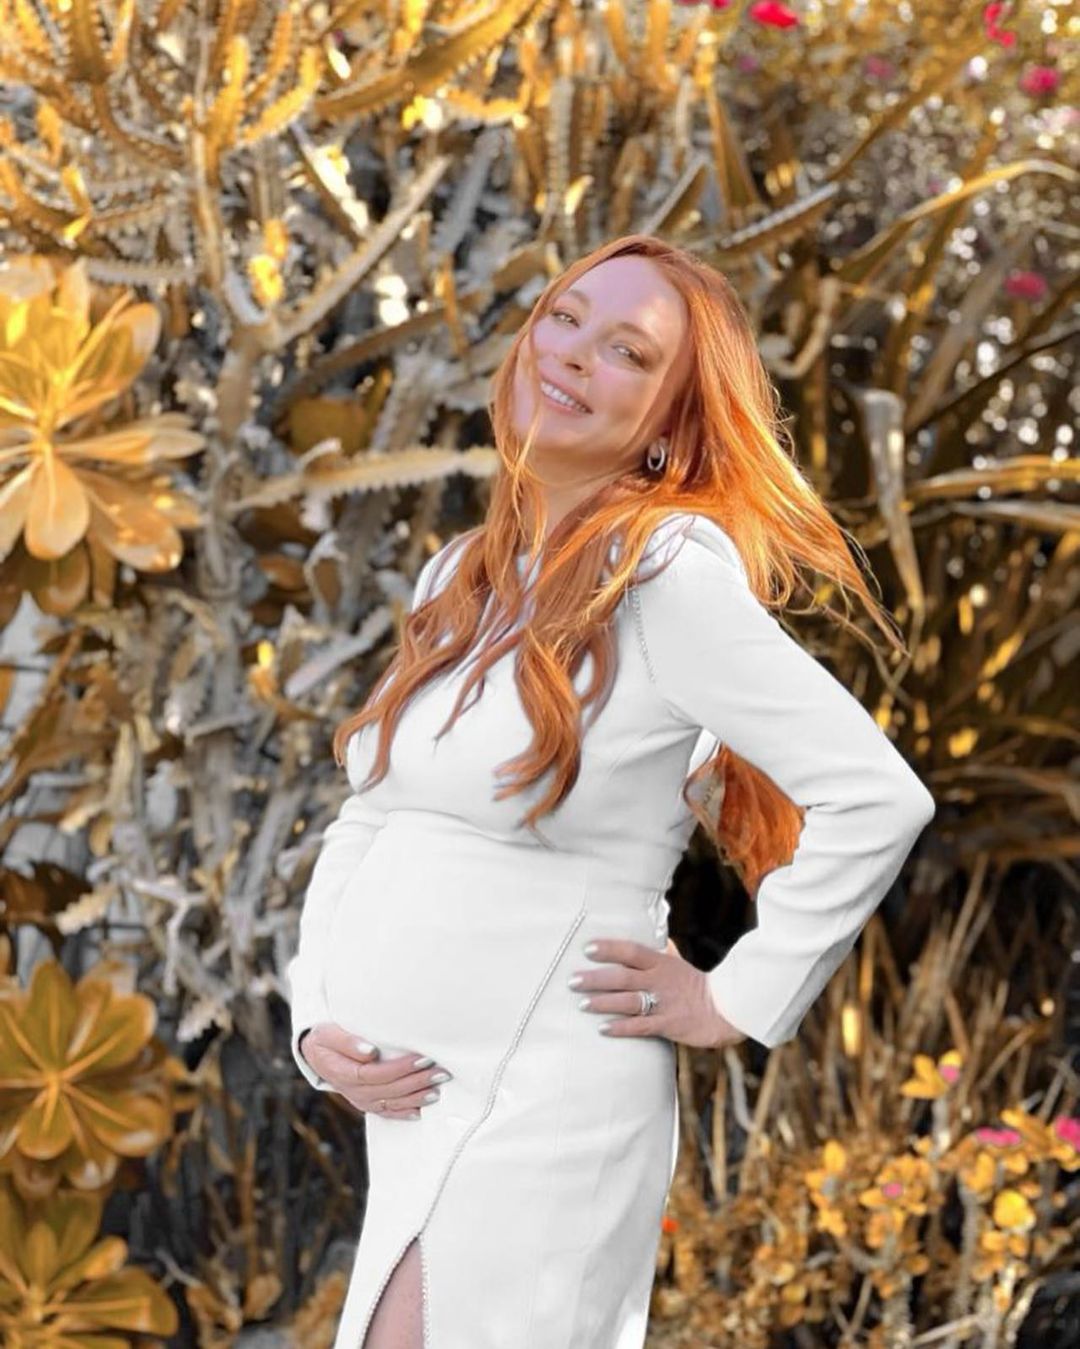 Photos n°7 : Lindsay Lohan Shows Off Her Nursery!